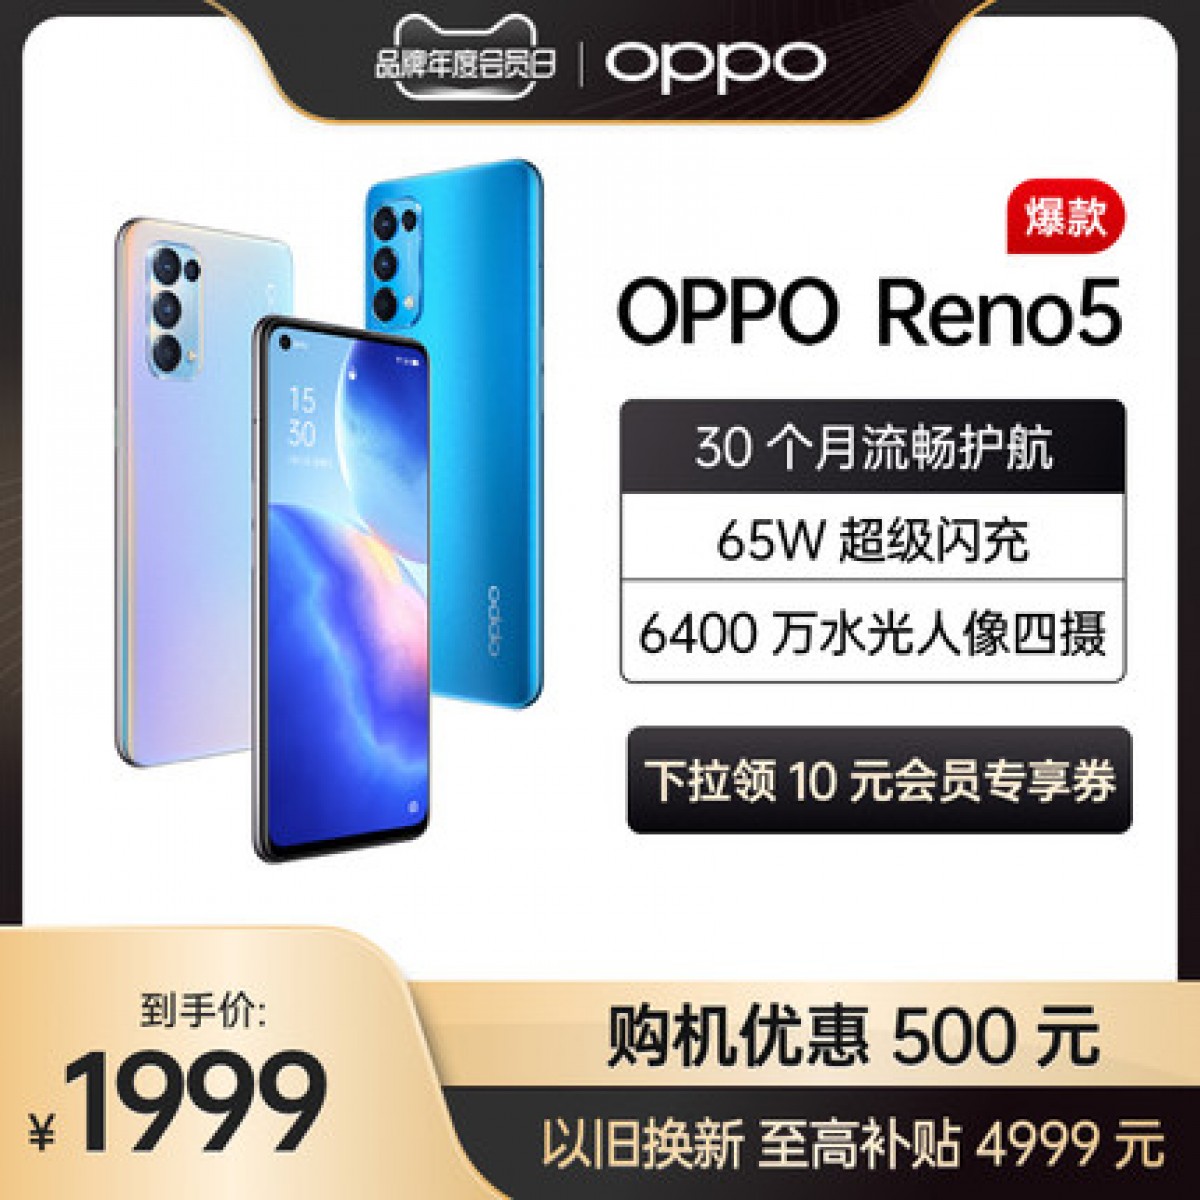 【购机优惠500元】OPPO Reno5 5G拍照智能手机官方旗舰店opporeno reno opporeno5